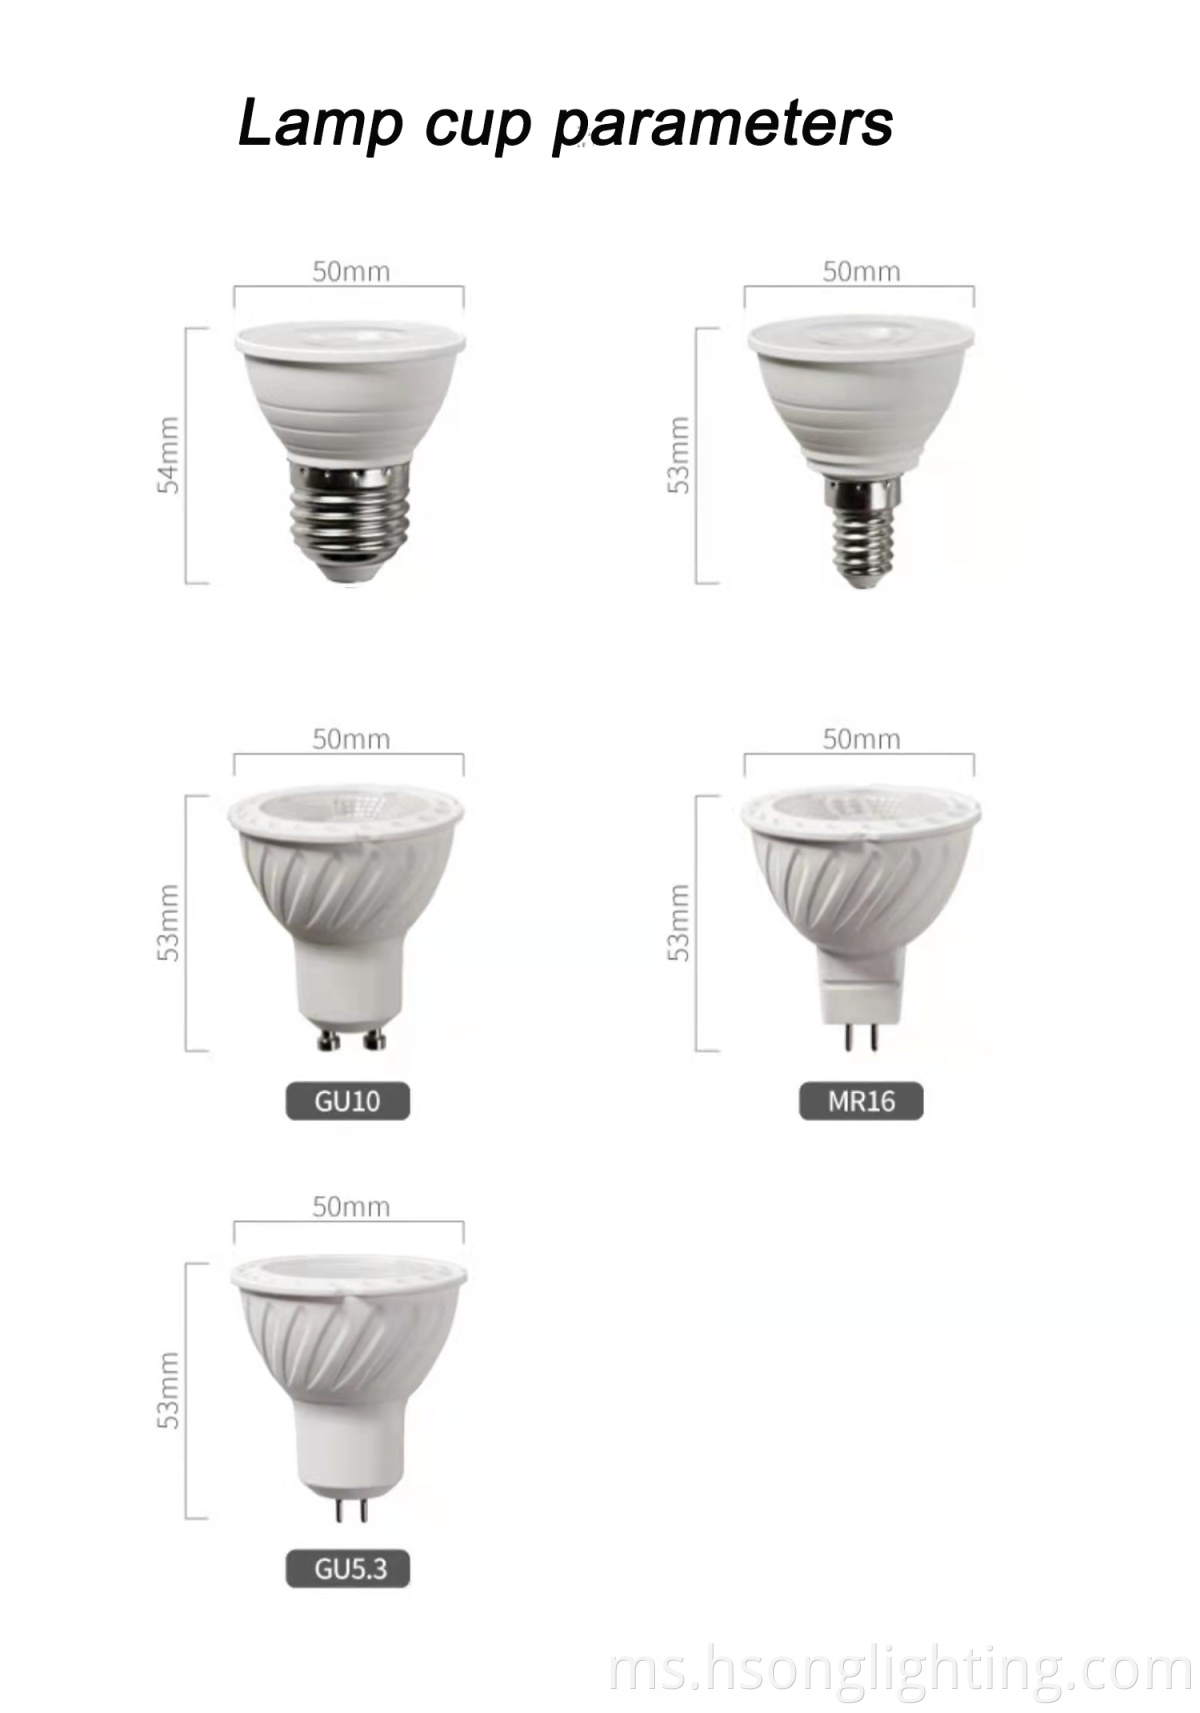 Outlet Kilang Dalaman LED Kecil LED GU10 GU5.3 MR16 LED LAMP CUP